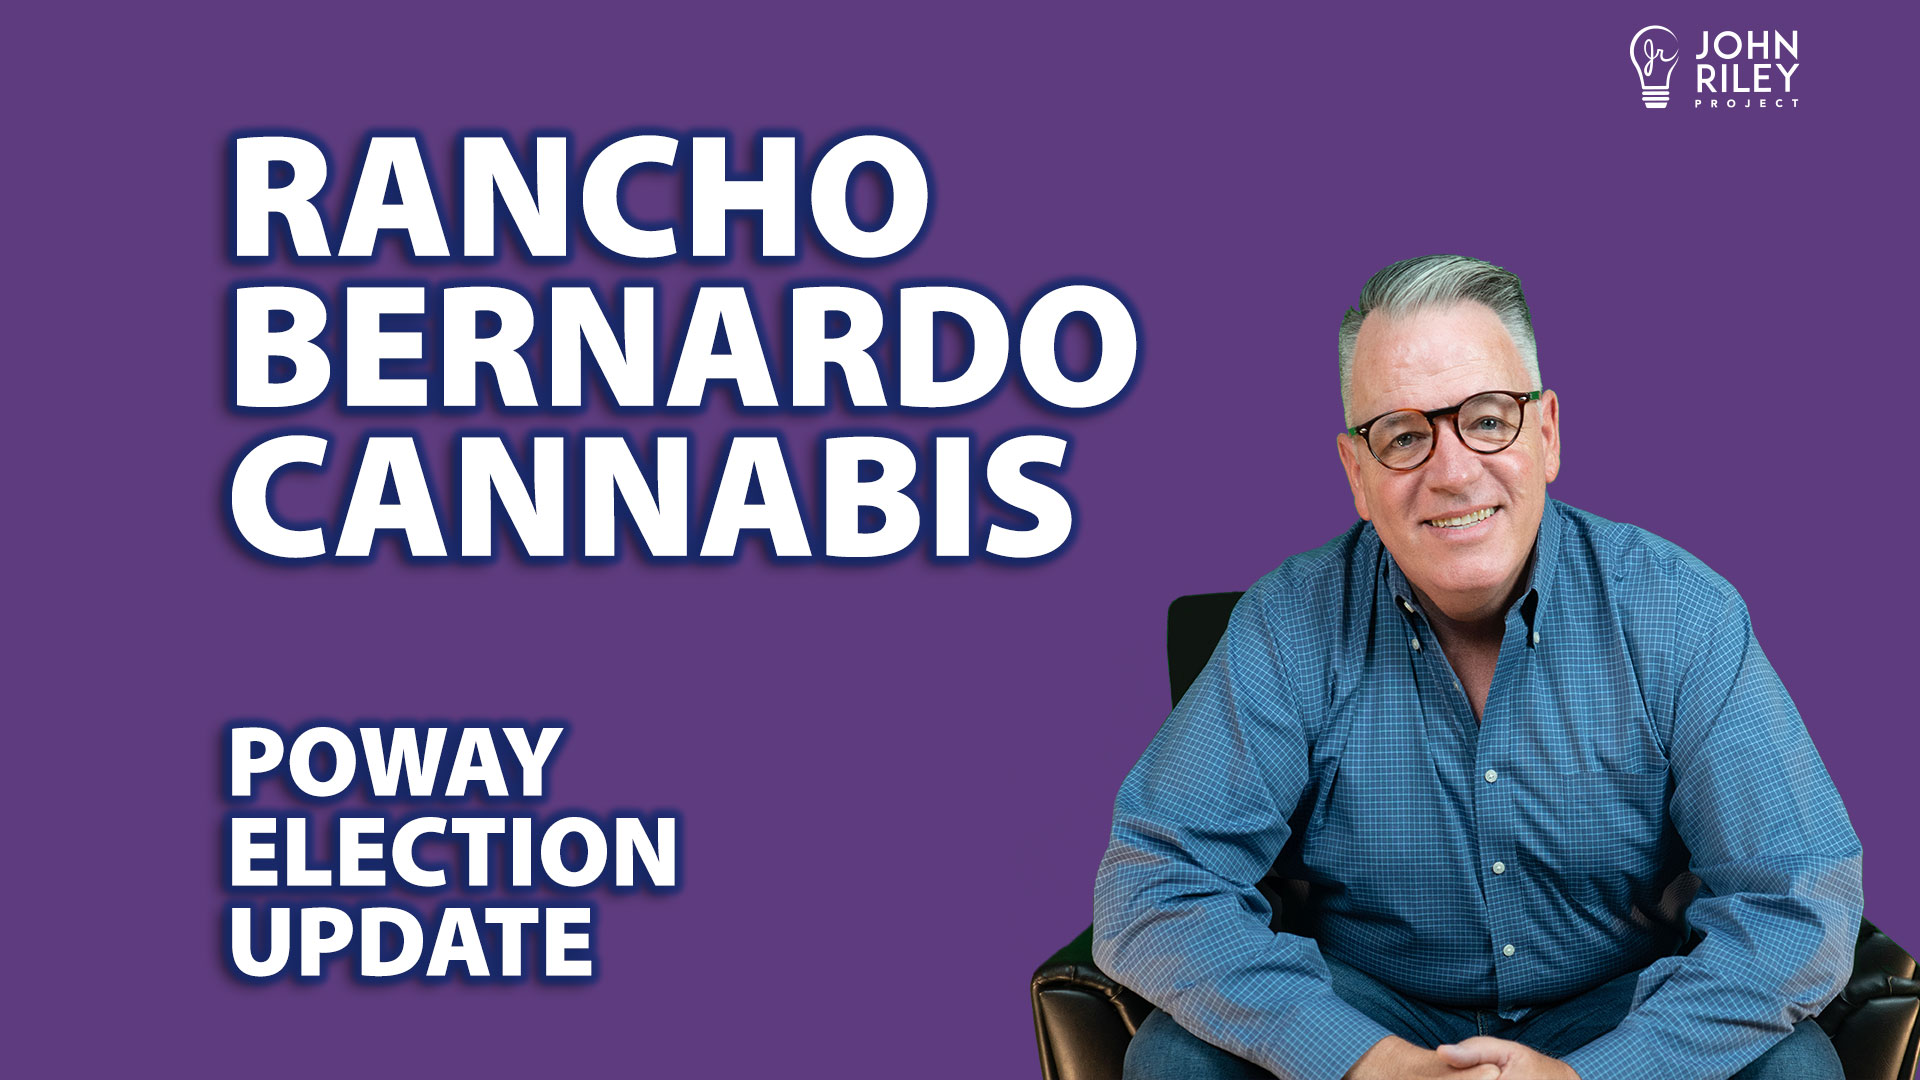 rancho bernardo marijuana, cannabis, marijuana, poway elections, john riley project, canada, jrp0287